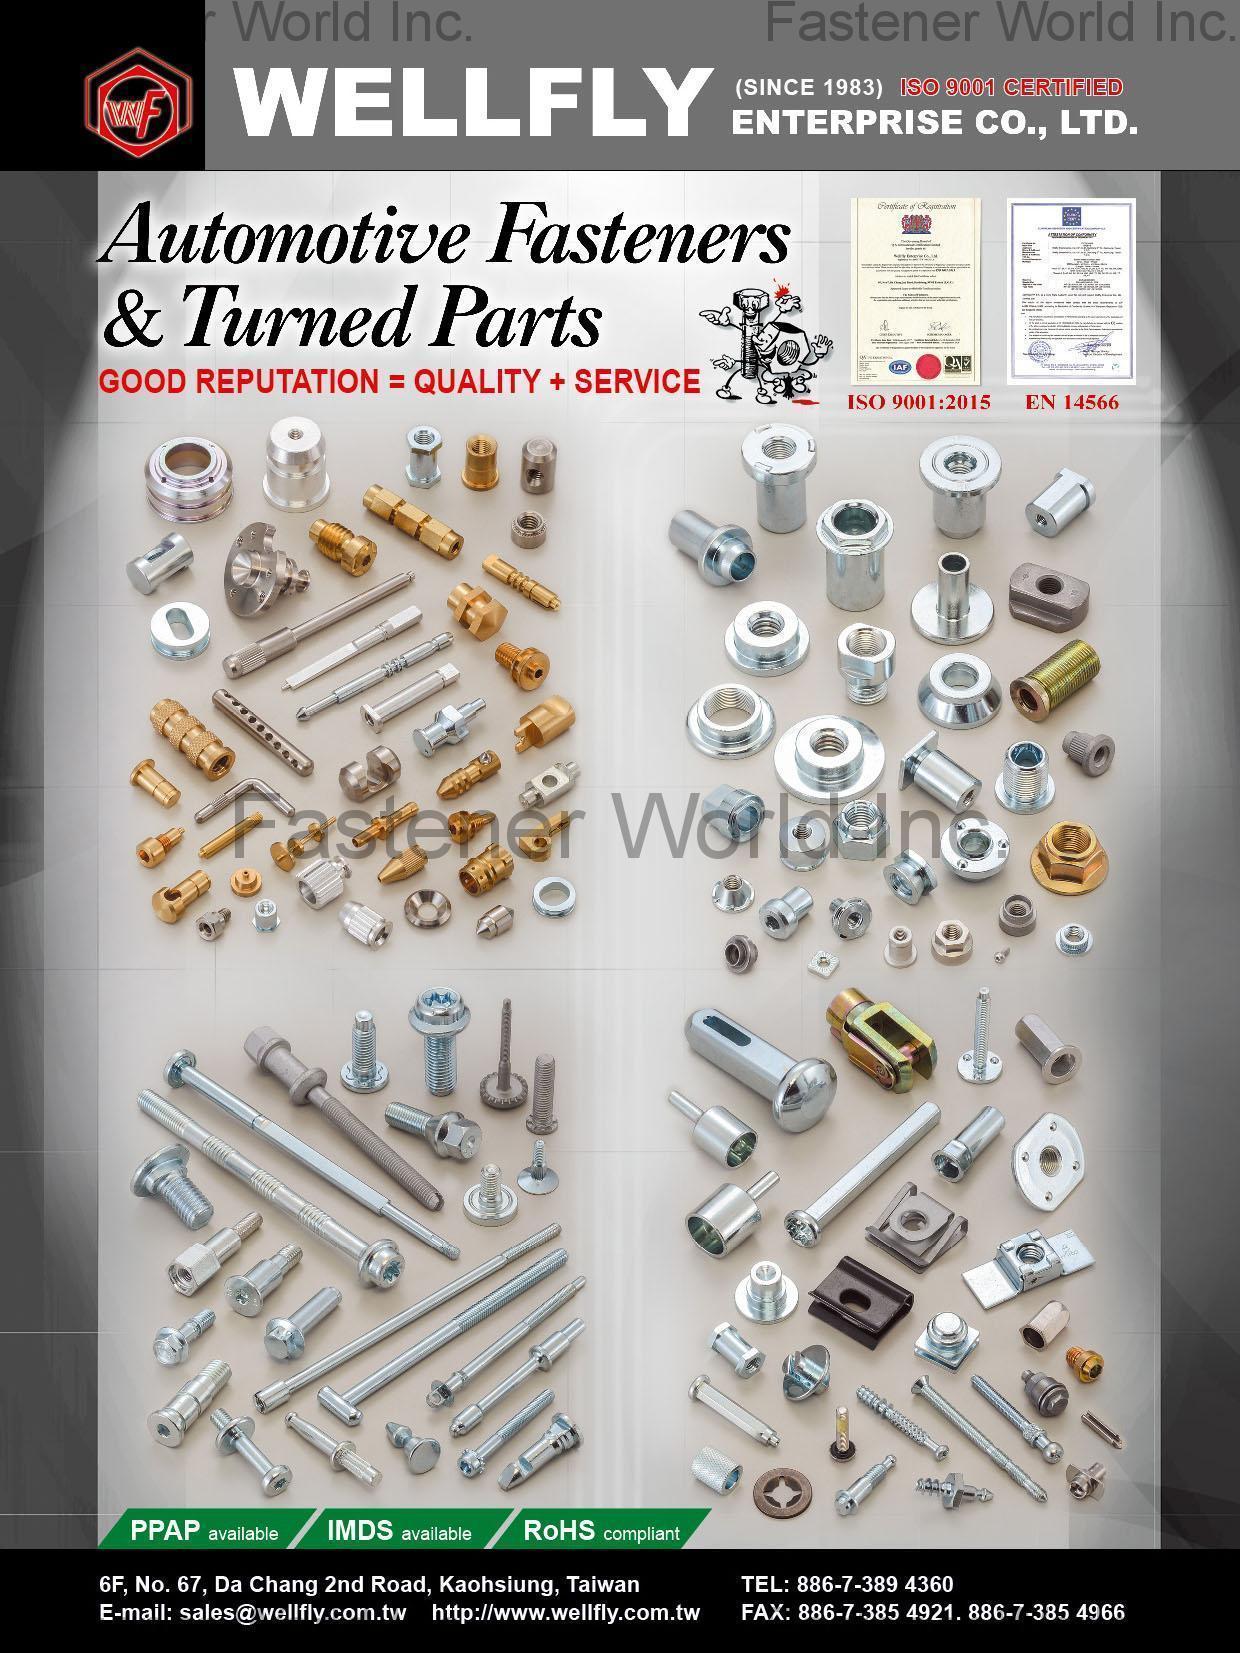 WELLFLY ENTERPRISE CO., LTD. , Automotive Fasteners & Turned Parts , Automotive Parts